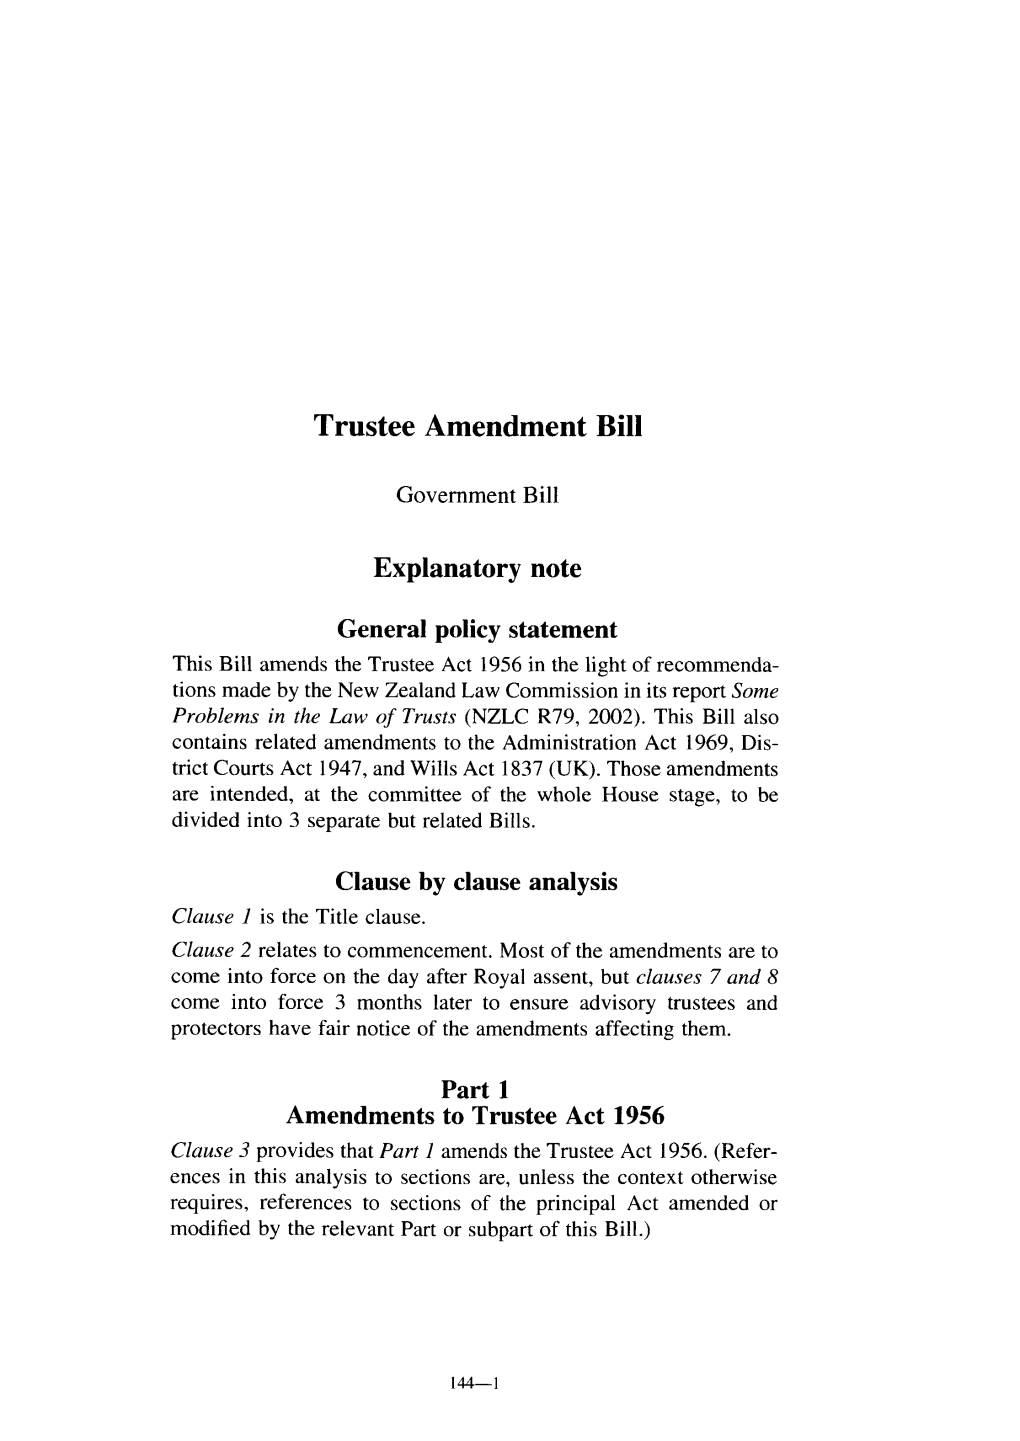 Trustee Amendment Bill-144-1